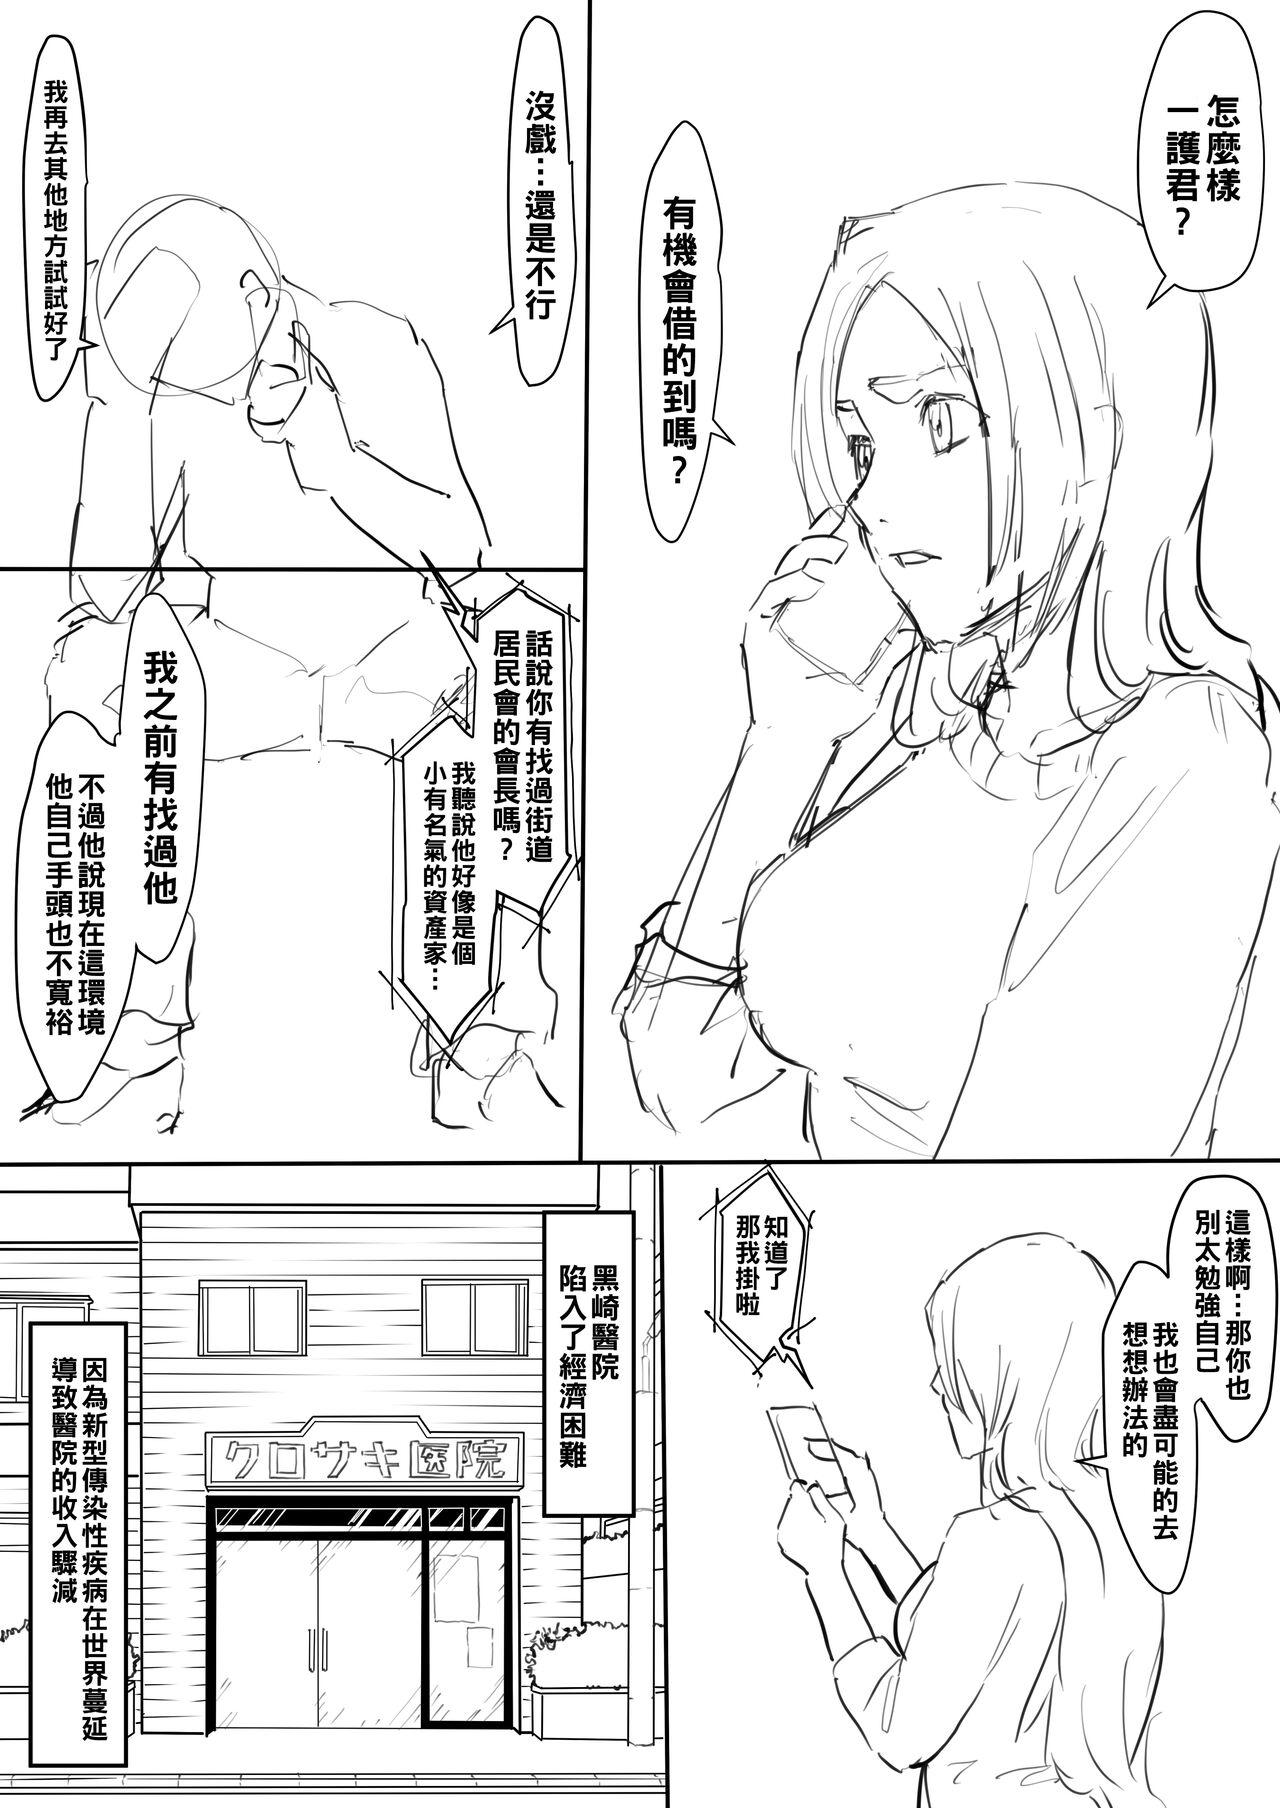 Delicia Orihime Manga - Bleach Fodendo - Page 1